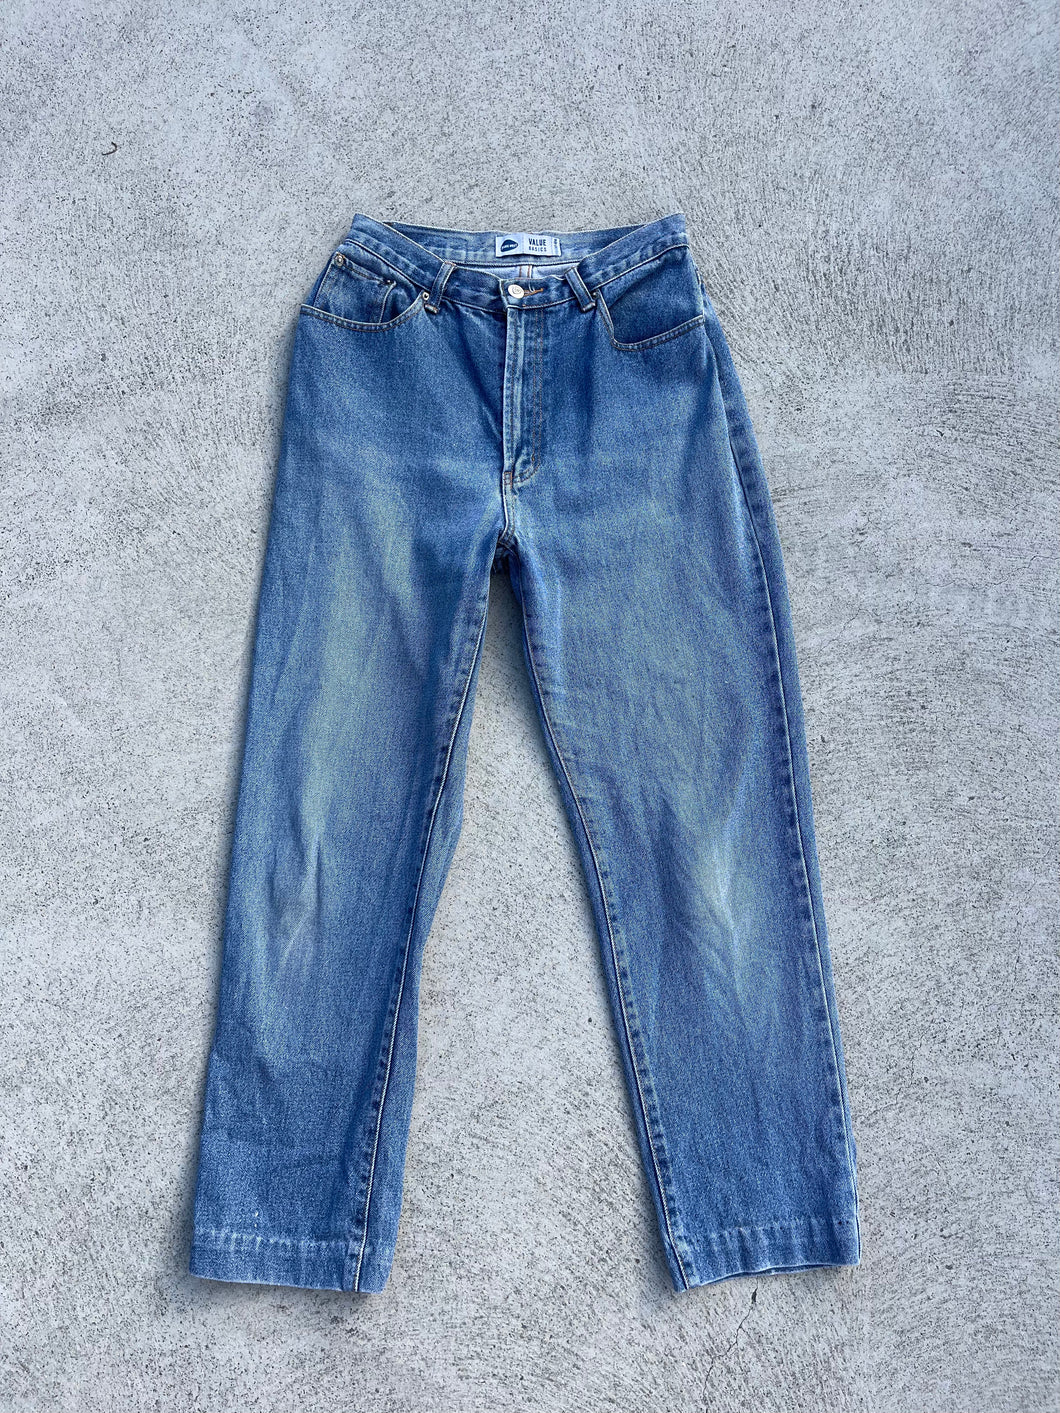 Vintage Jeans West Jeans (6-8)